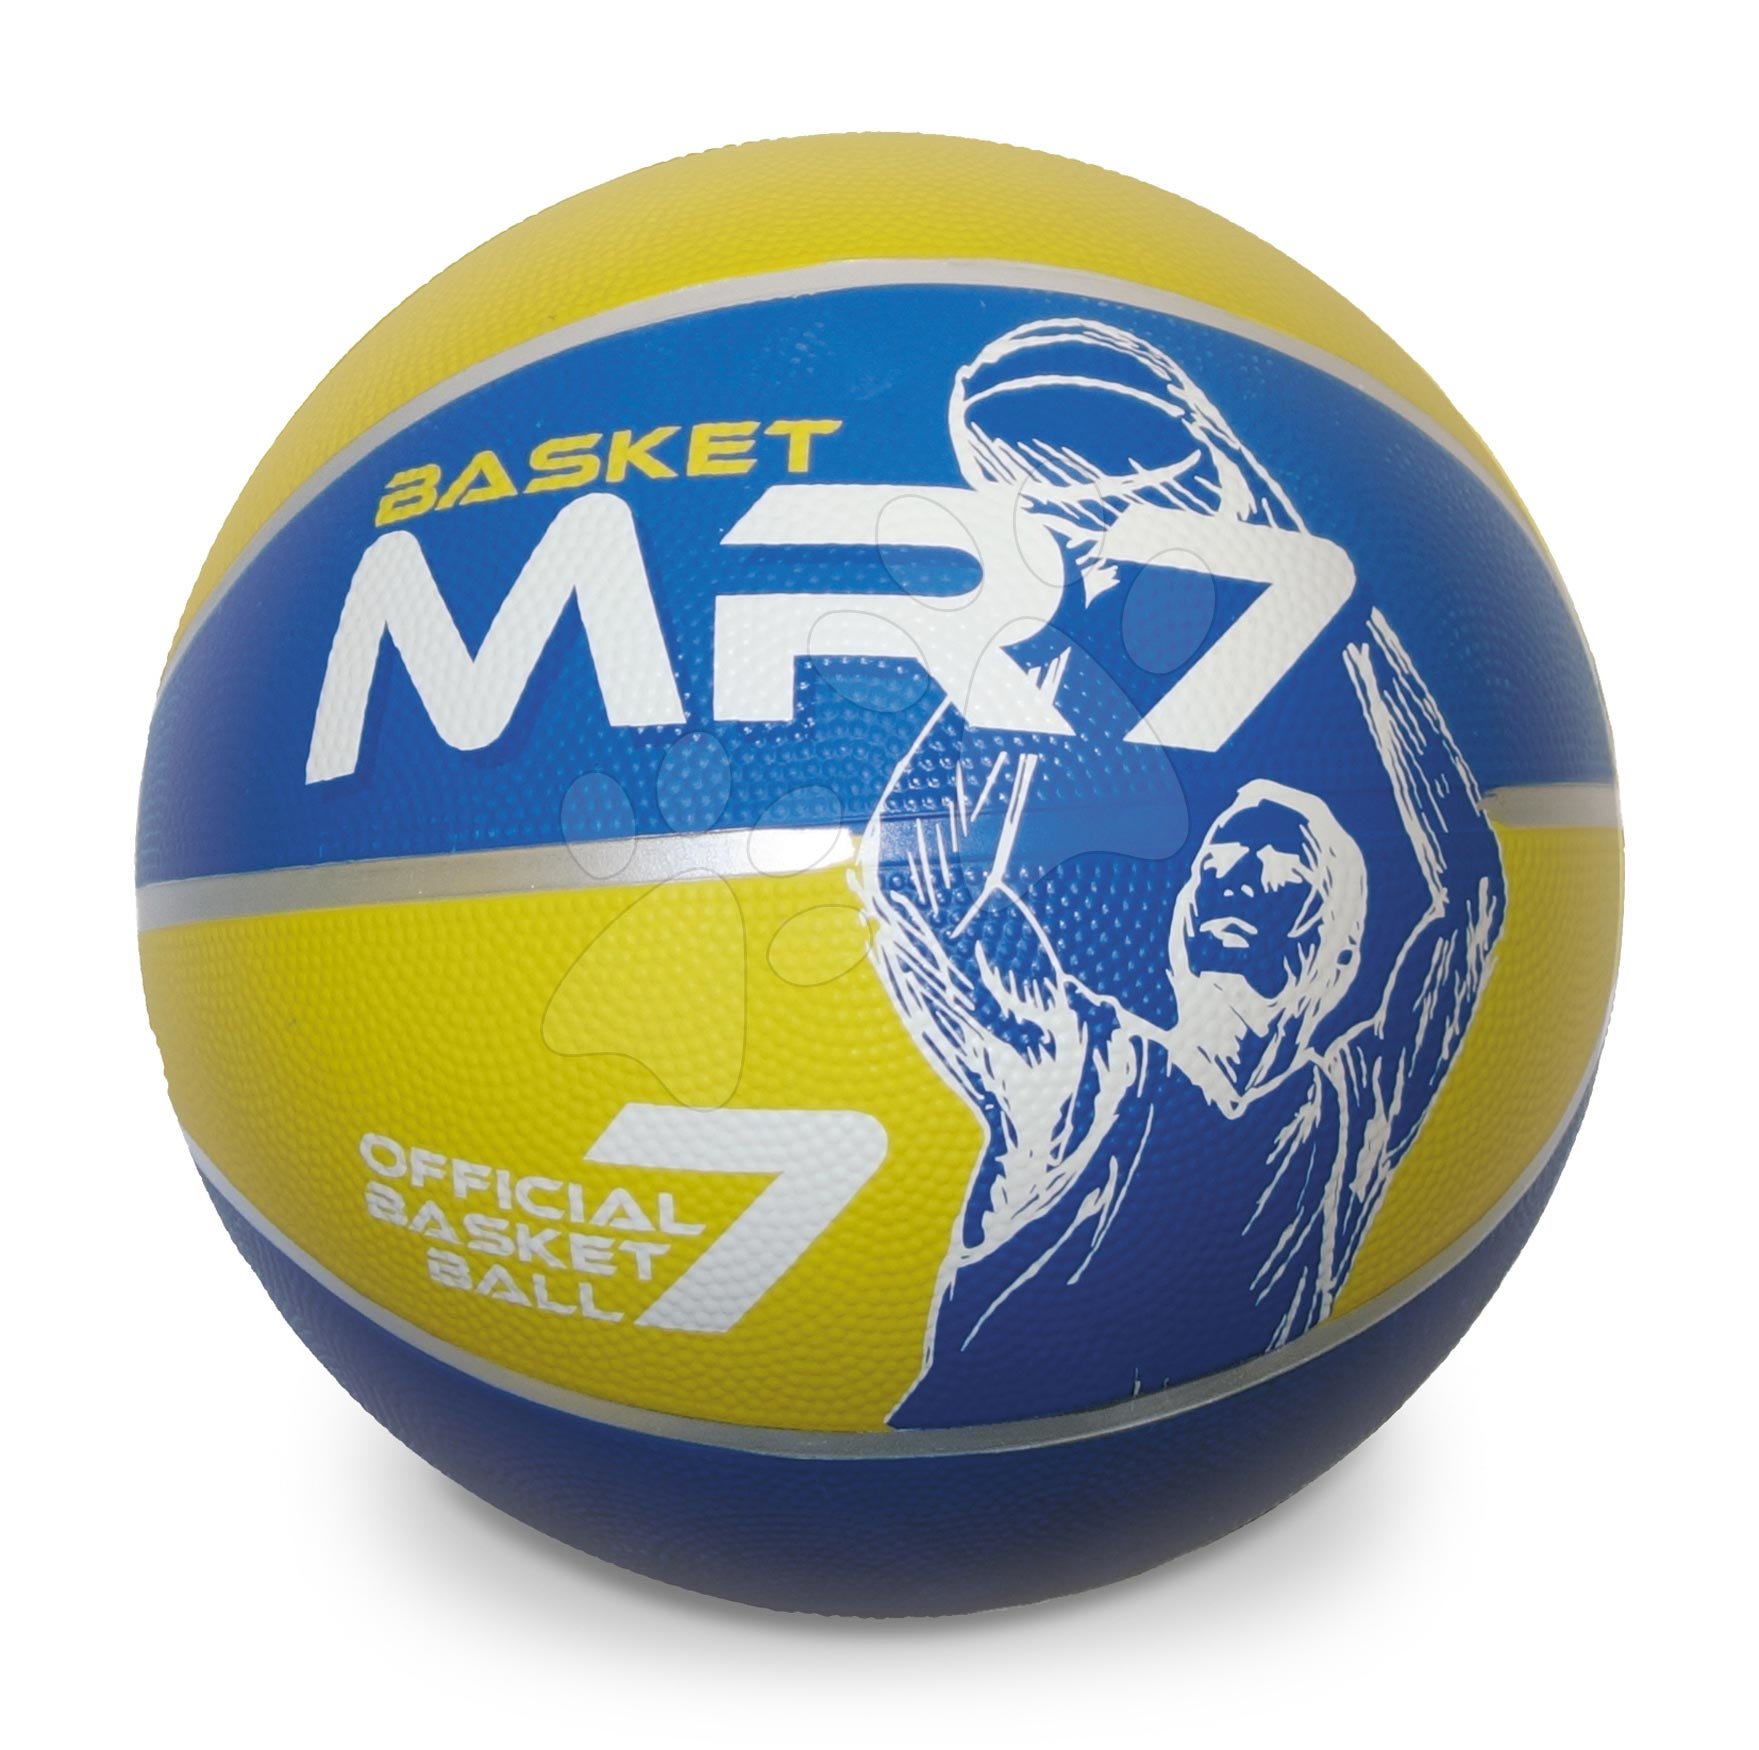 Kosárlabda Basket MR7 Mondo mérete 7 súlya 600 g